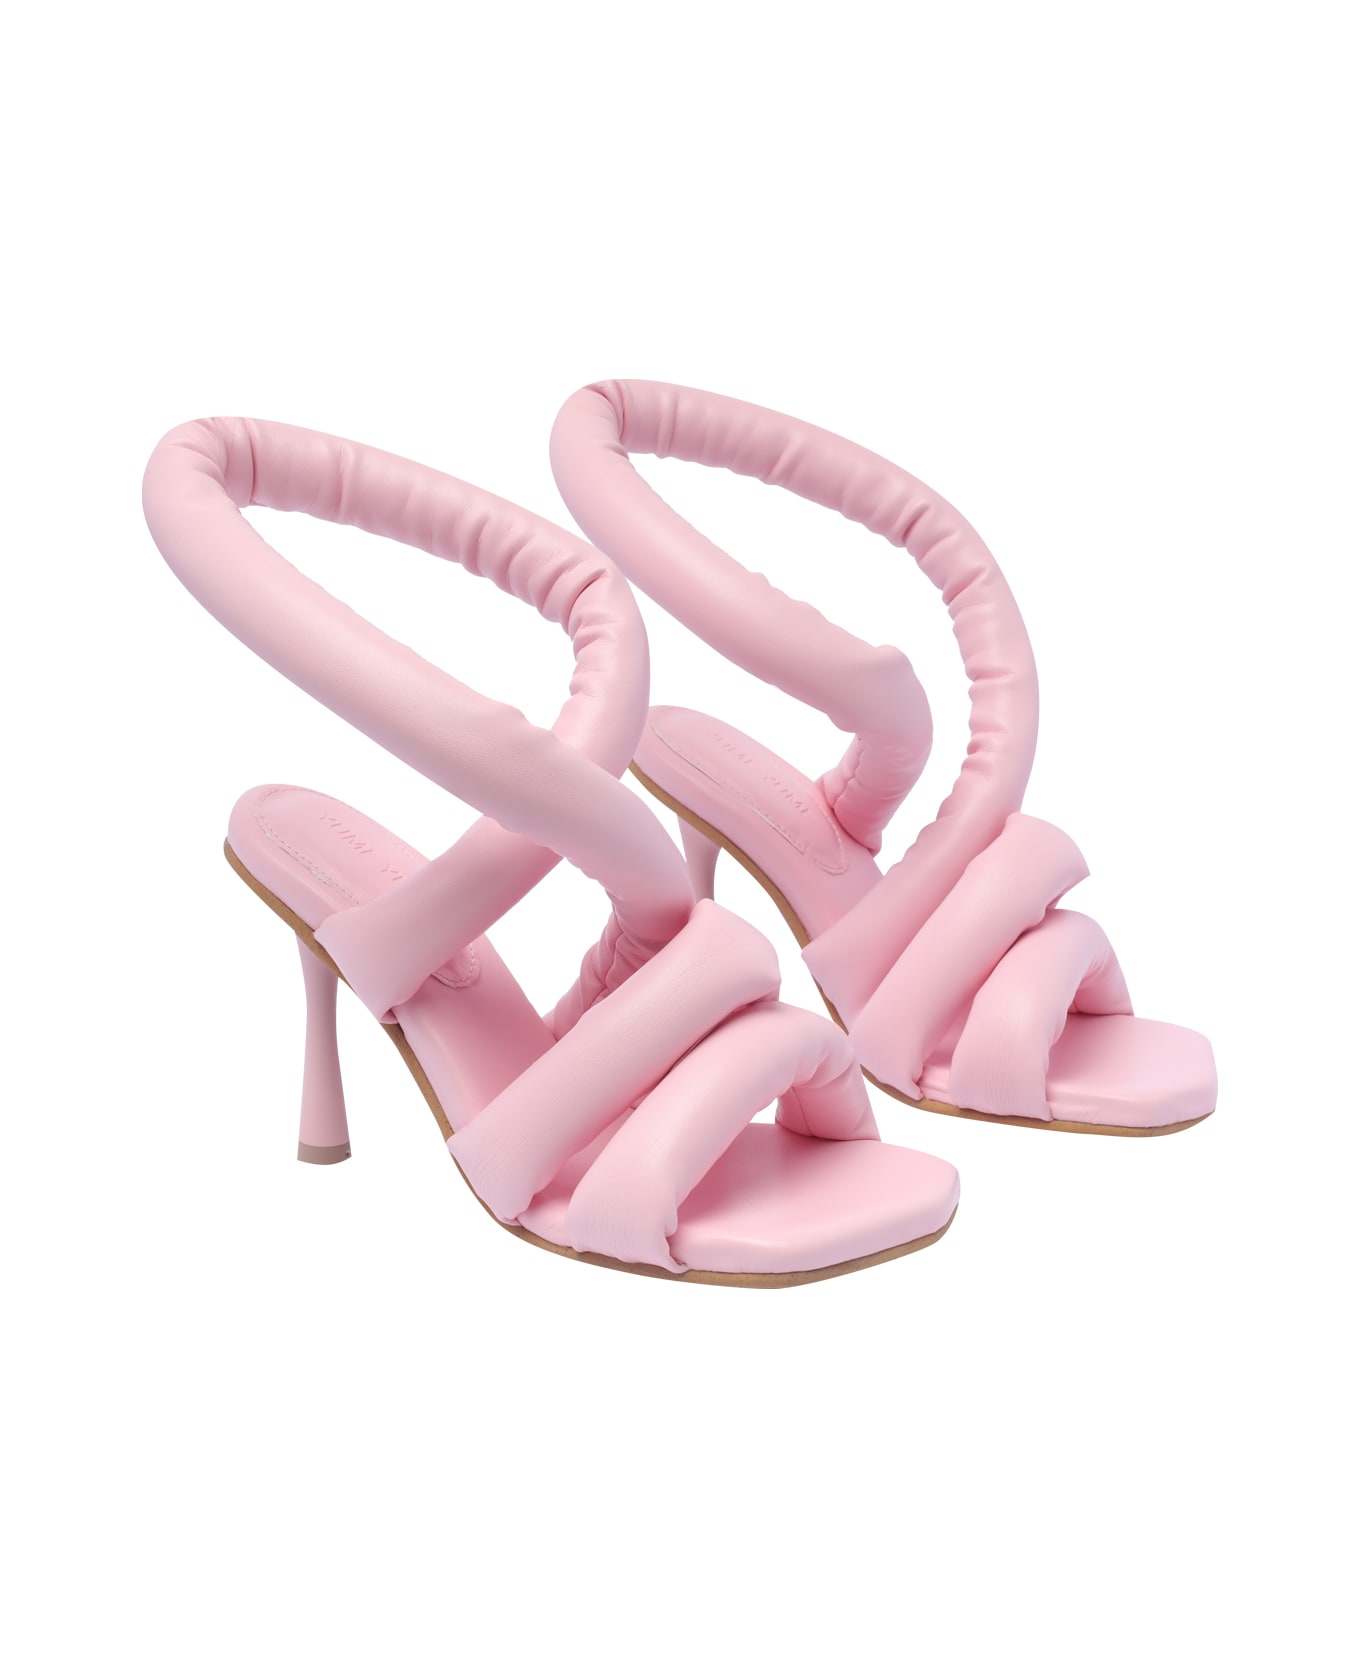 YUME YUME Circular Pump Sandals - Pink サンダル